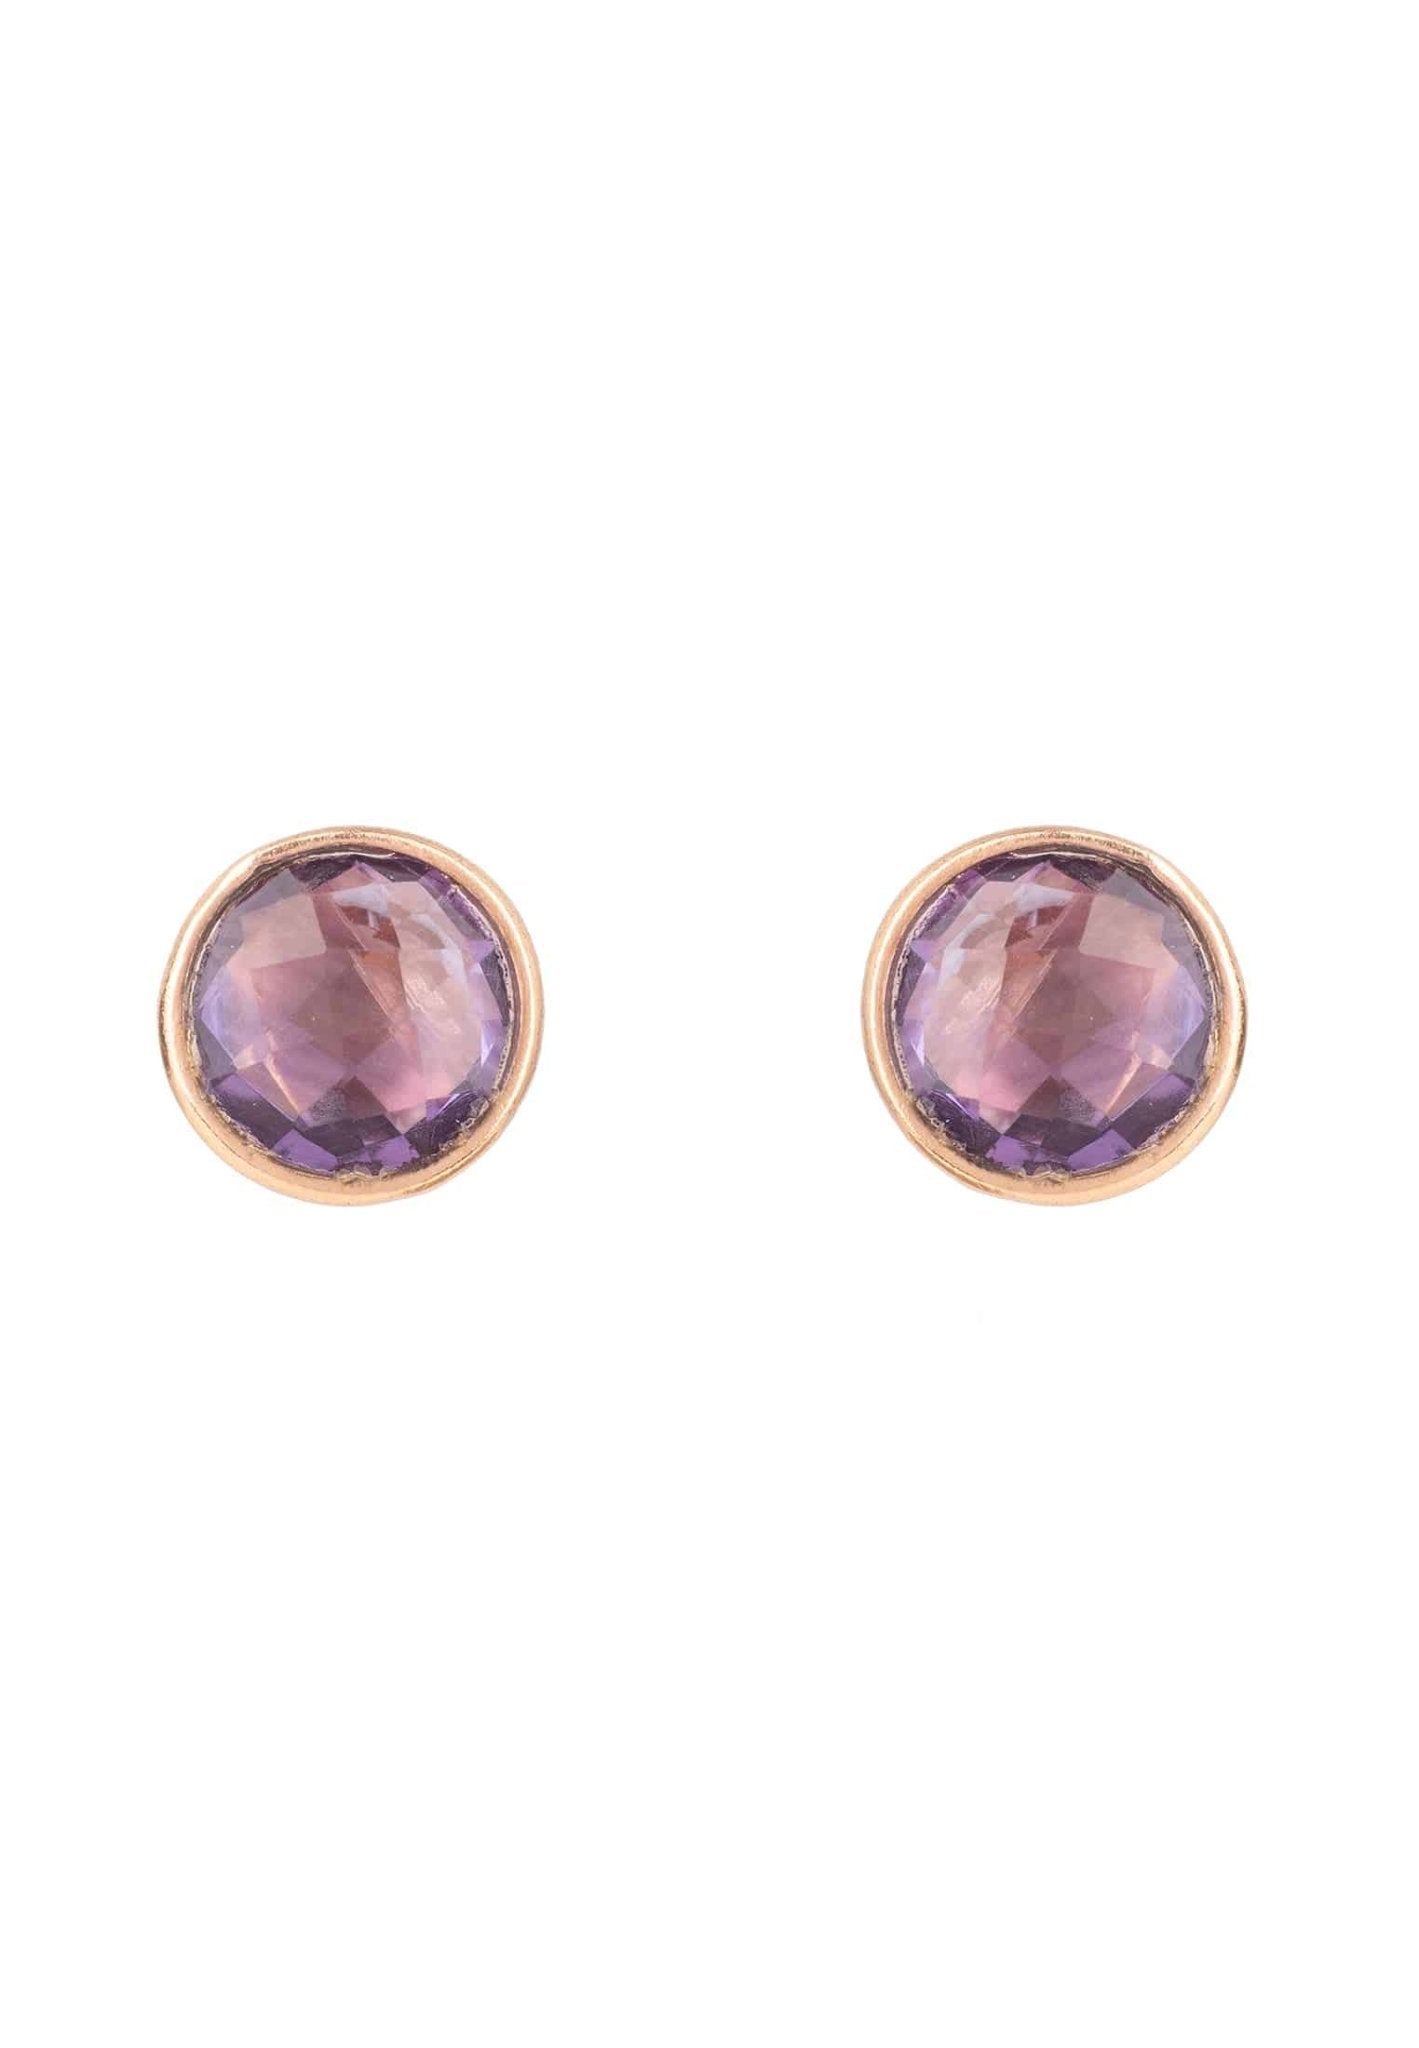 Medium Circle Gemstone Earrings Rosegold Amethyst - LATELITA Earrings